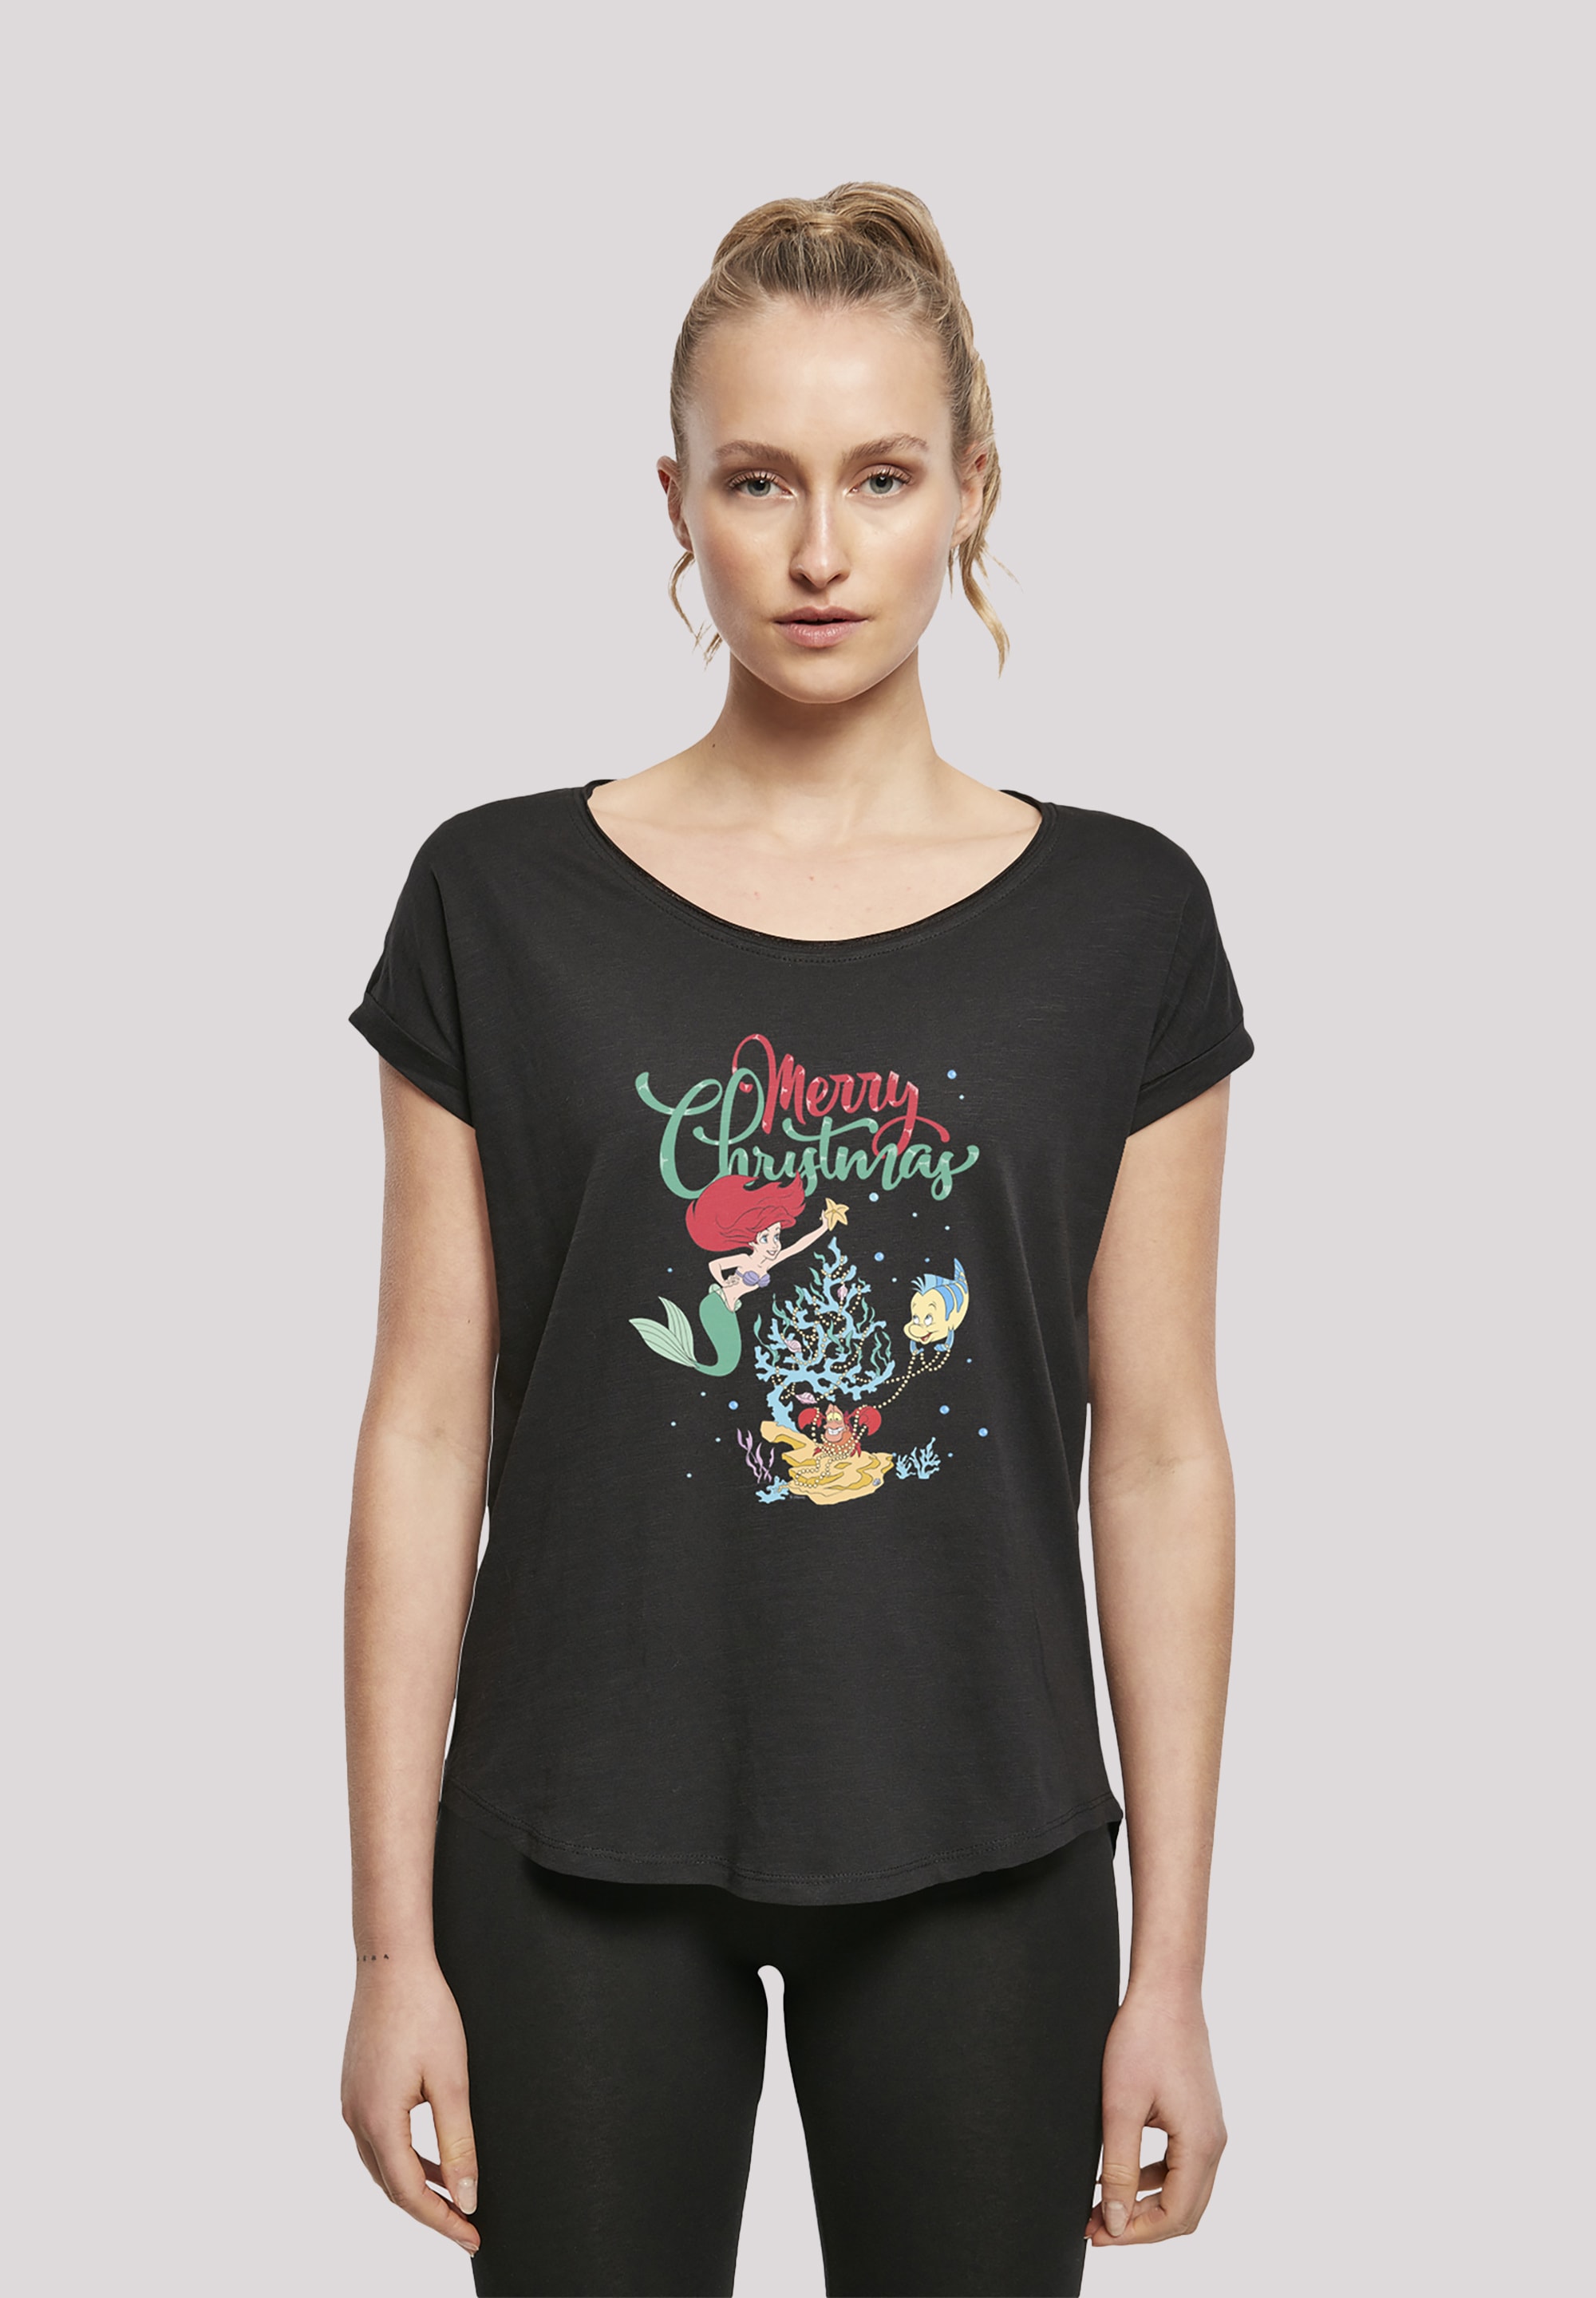 Christmas«, Arielle walking F4NT4STIC I\'m Print T-Shirt shoppen Merry Meerjungfrau »Disney | die